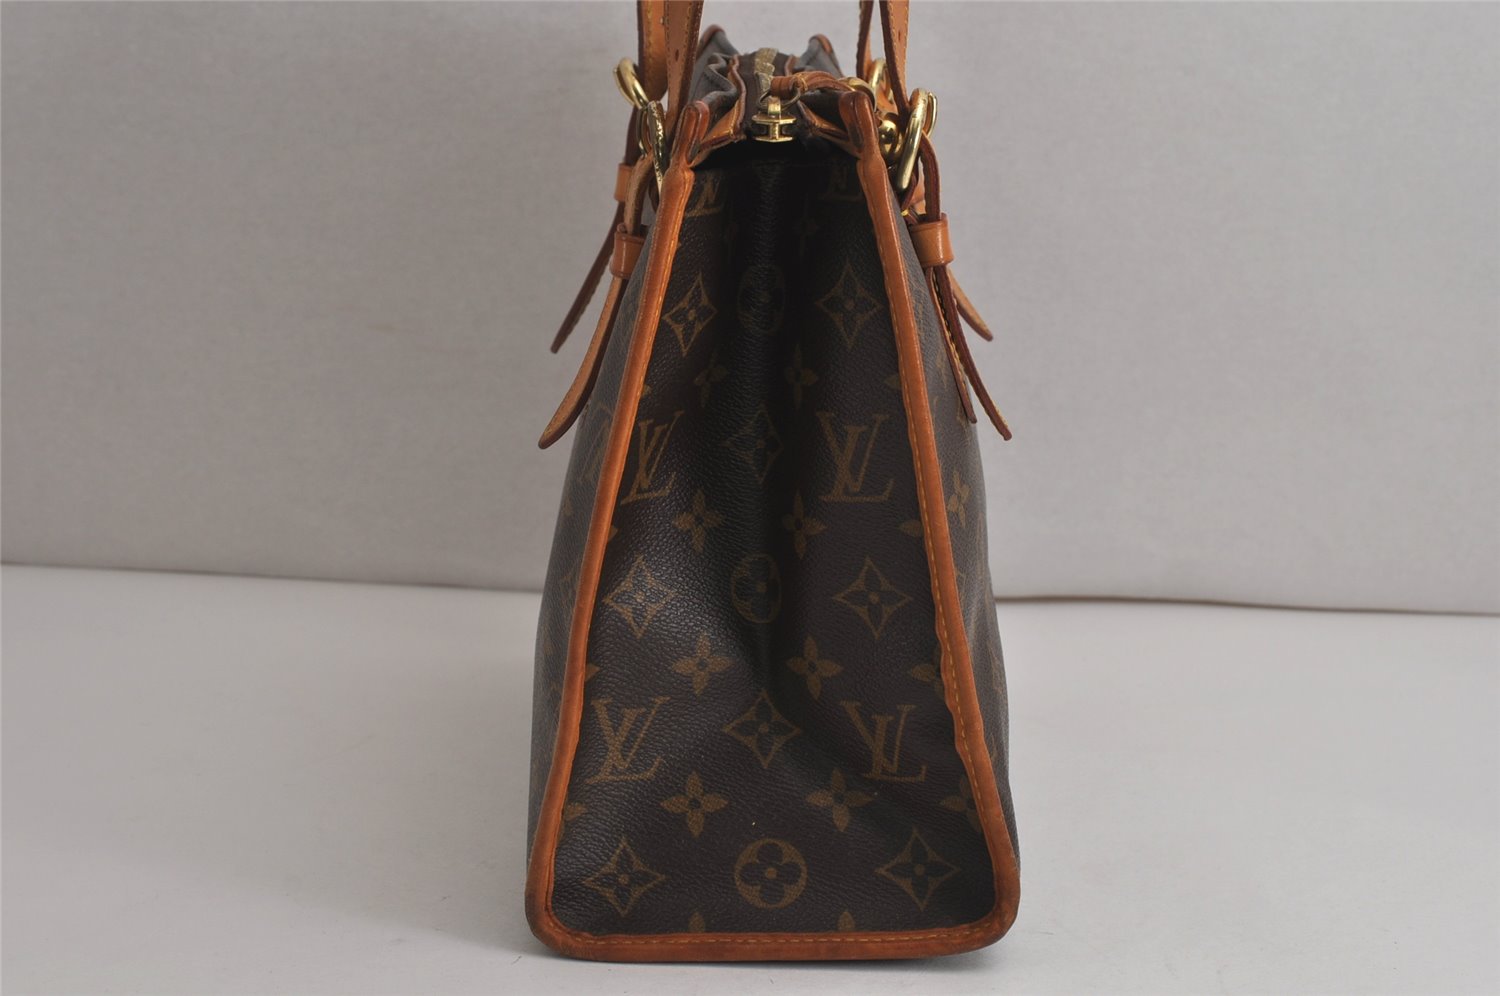 Authentic Louis Vuitton Monogram Popincourt Haut Shoulder Bag M40007 LV 0279K